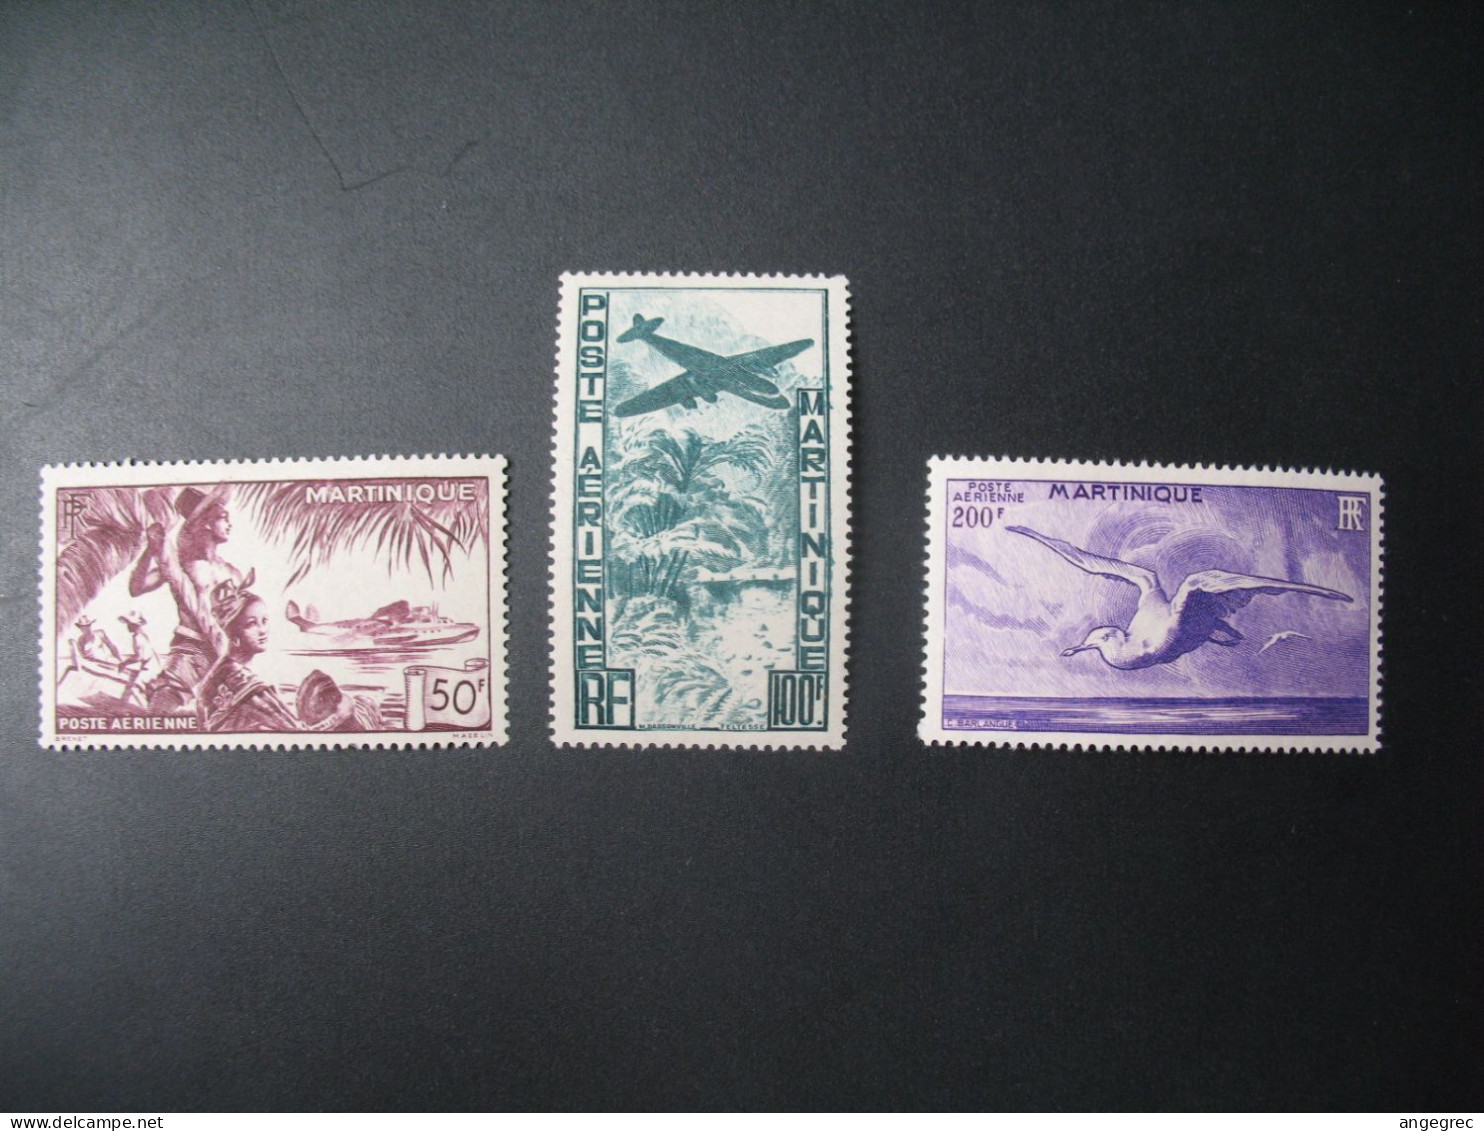 Martinique Stamps French Colonies 1947 PA N° 13 à 15 Neuf * à Voir N° 15 Aminci - Poste Aérienne